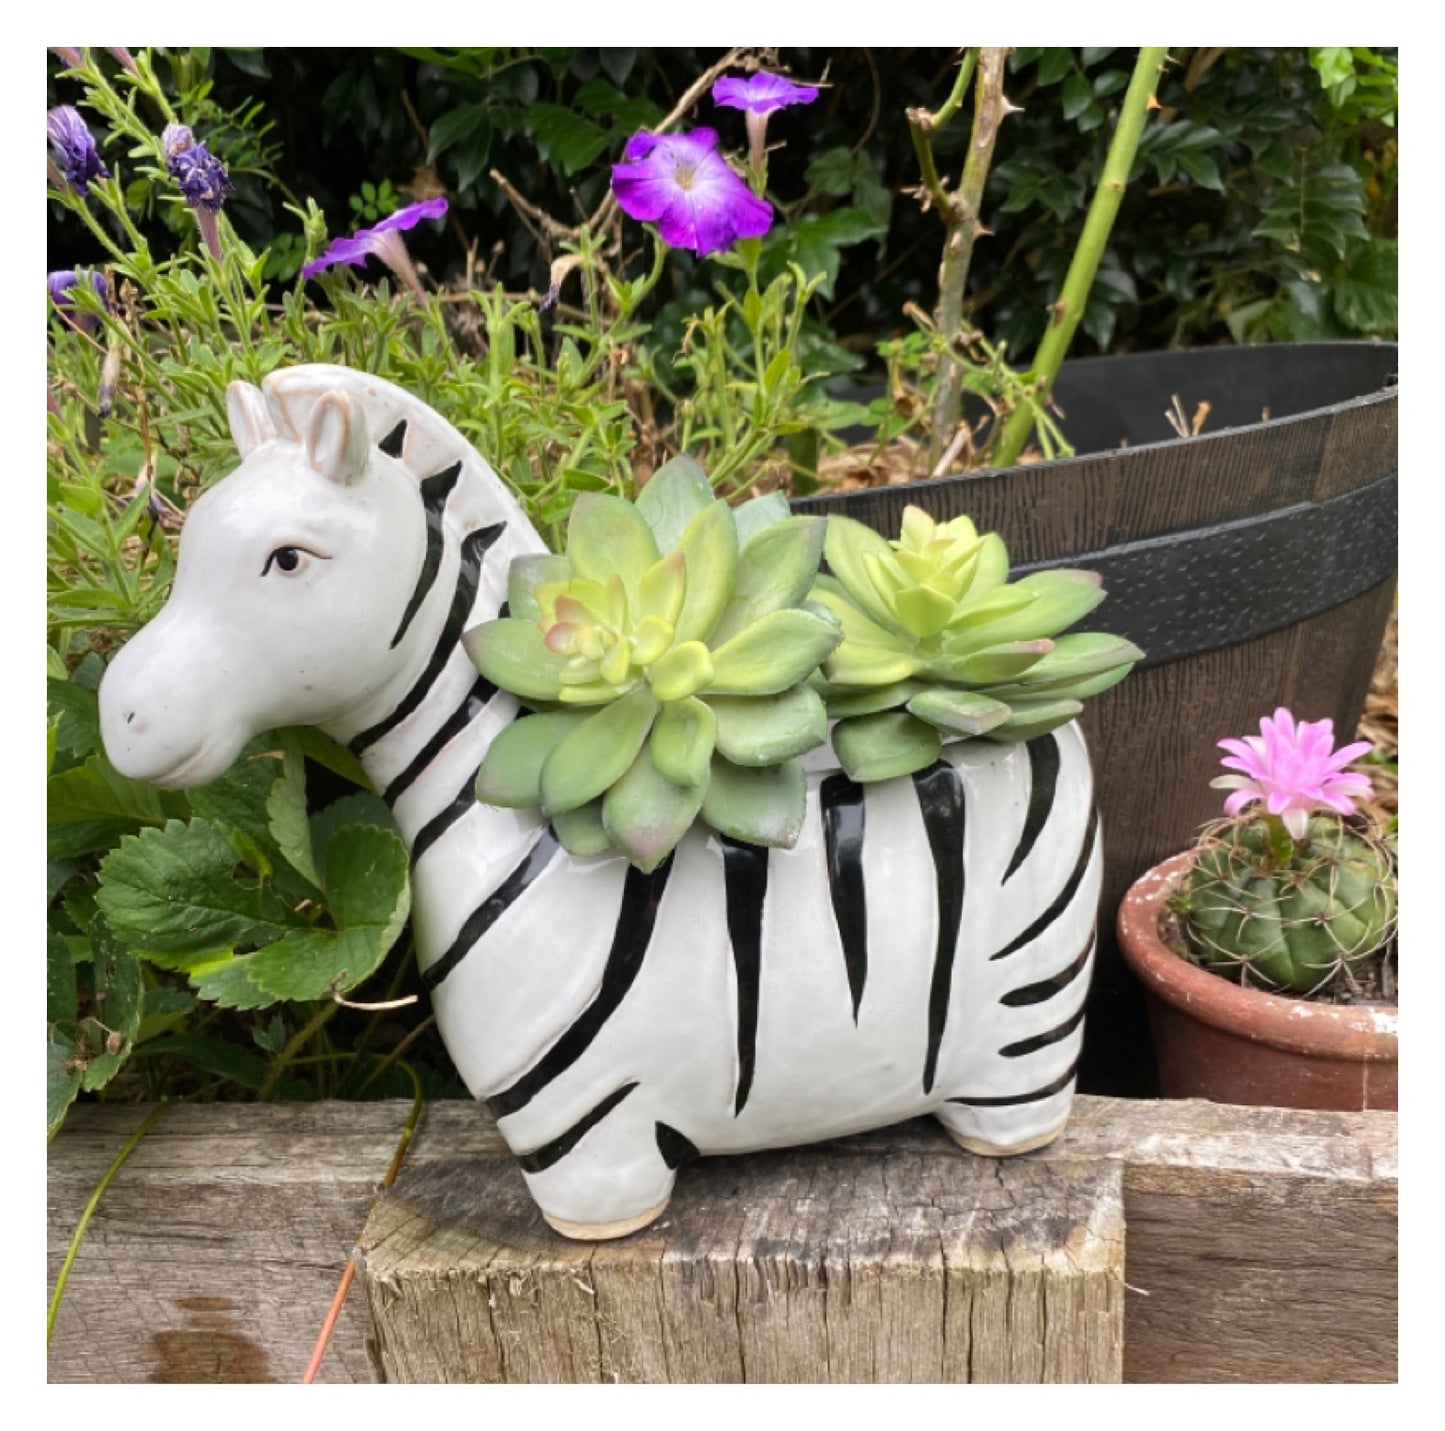 Zebra Leo Plant Pot Planter Garden